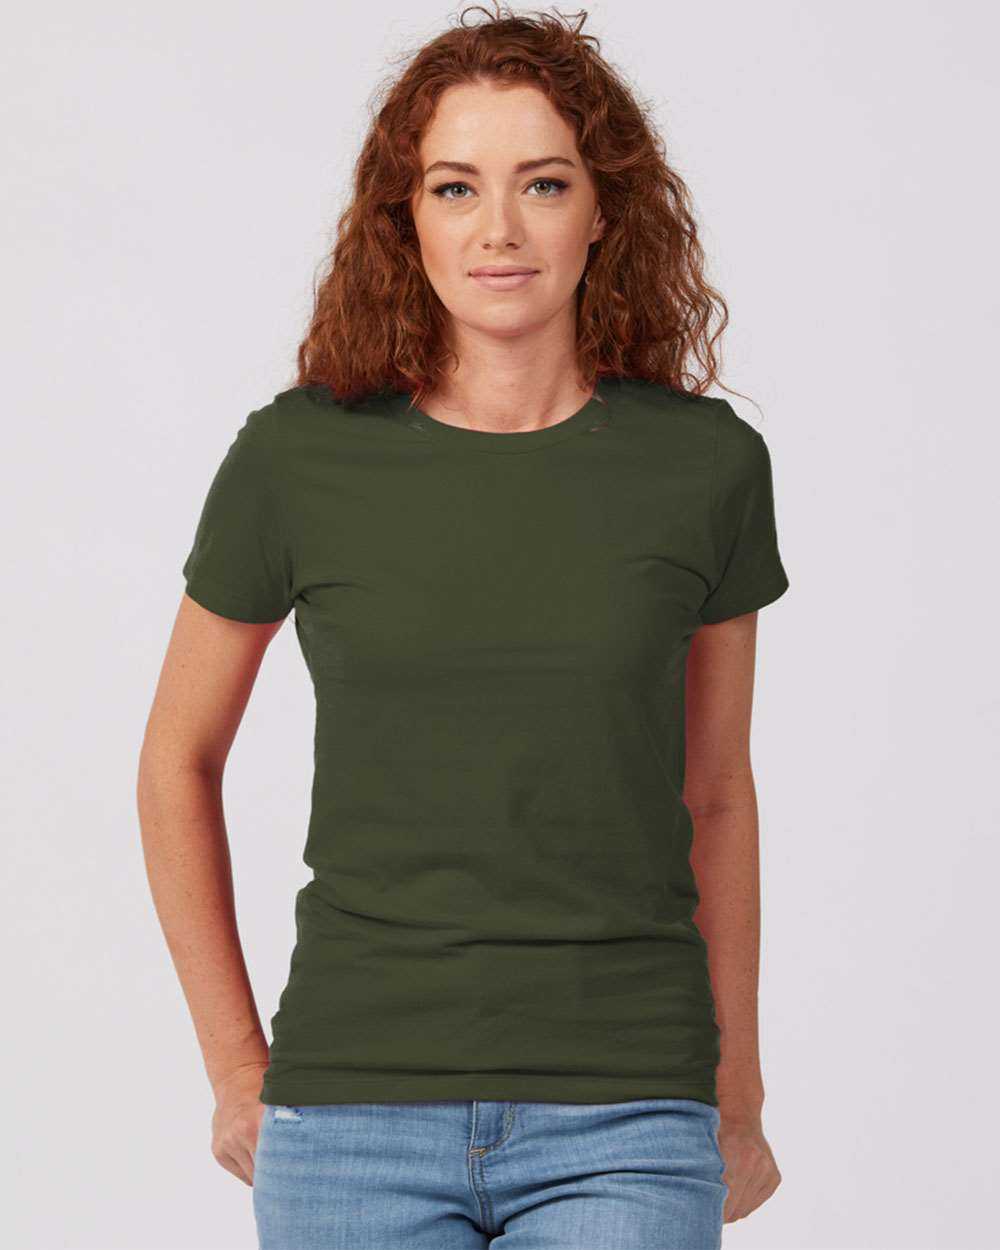 Tultex 516 Women's Premium Cotton T-Shirt - Olive - HIT a Double